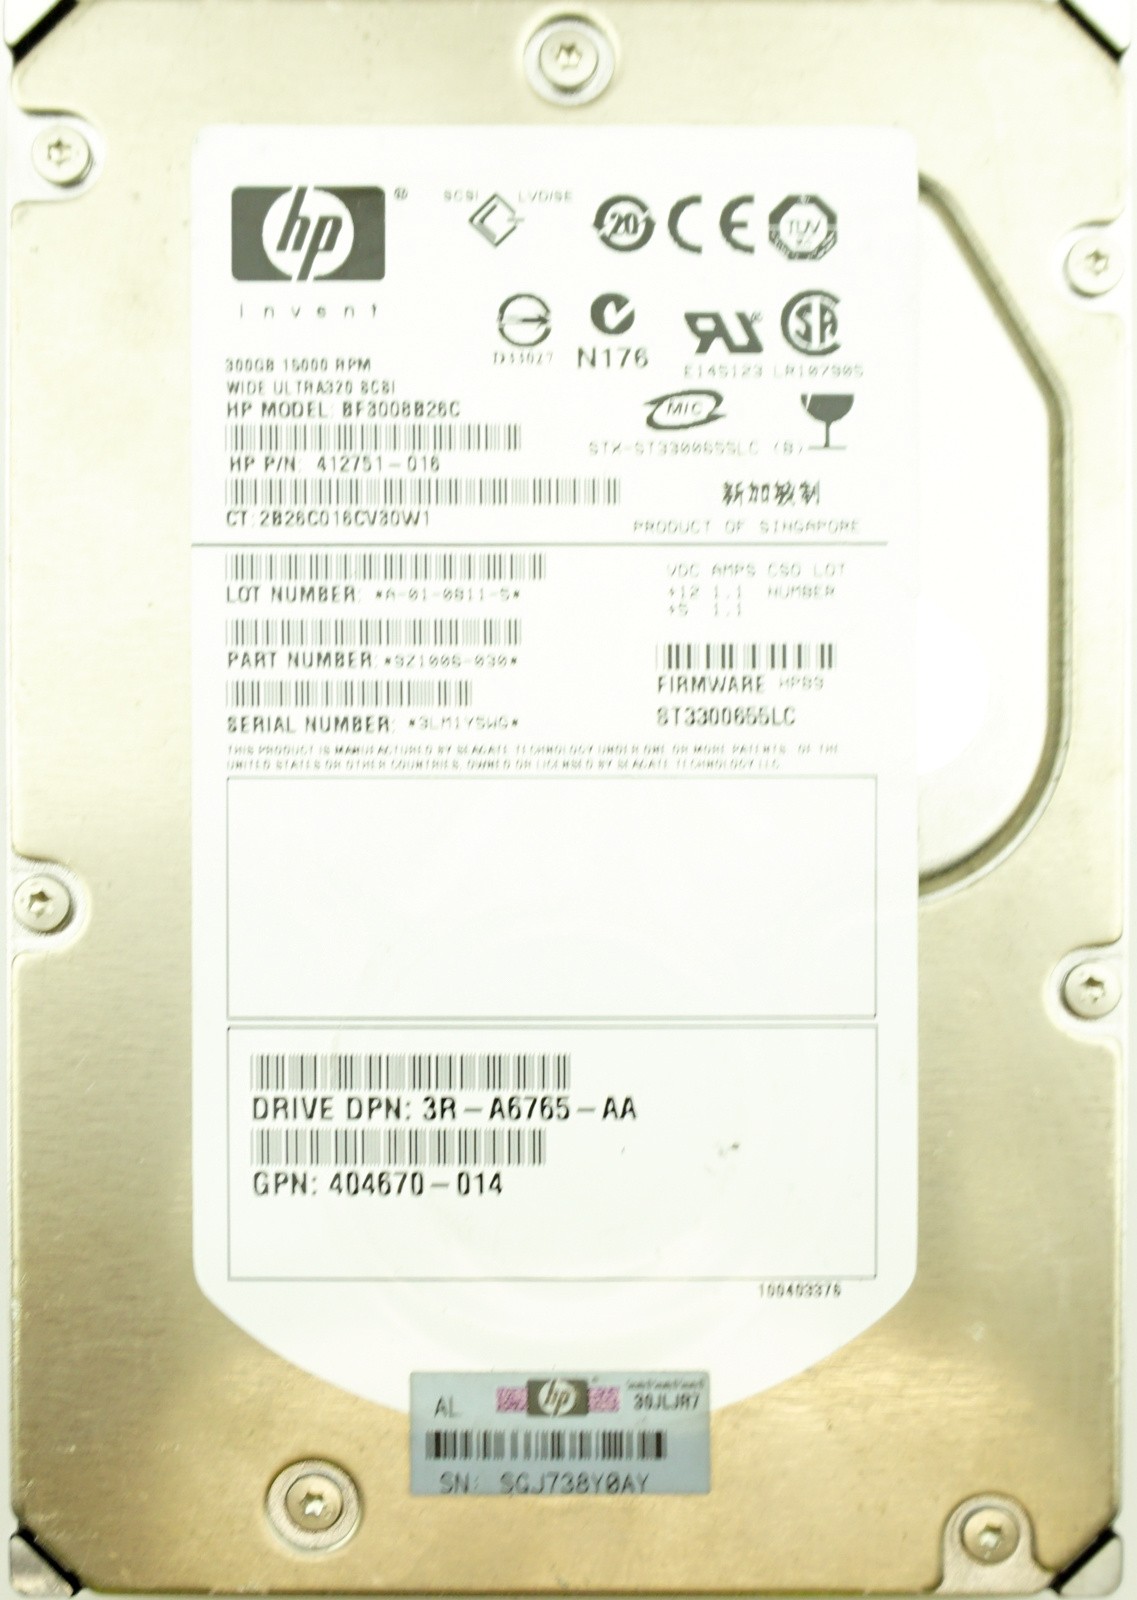 HP (412751-016) 300GB SCSI - 80 Pin (LFF) 15K HDD